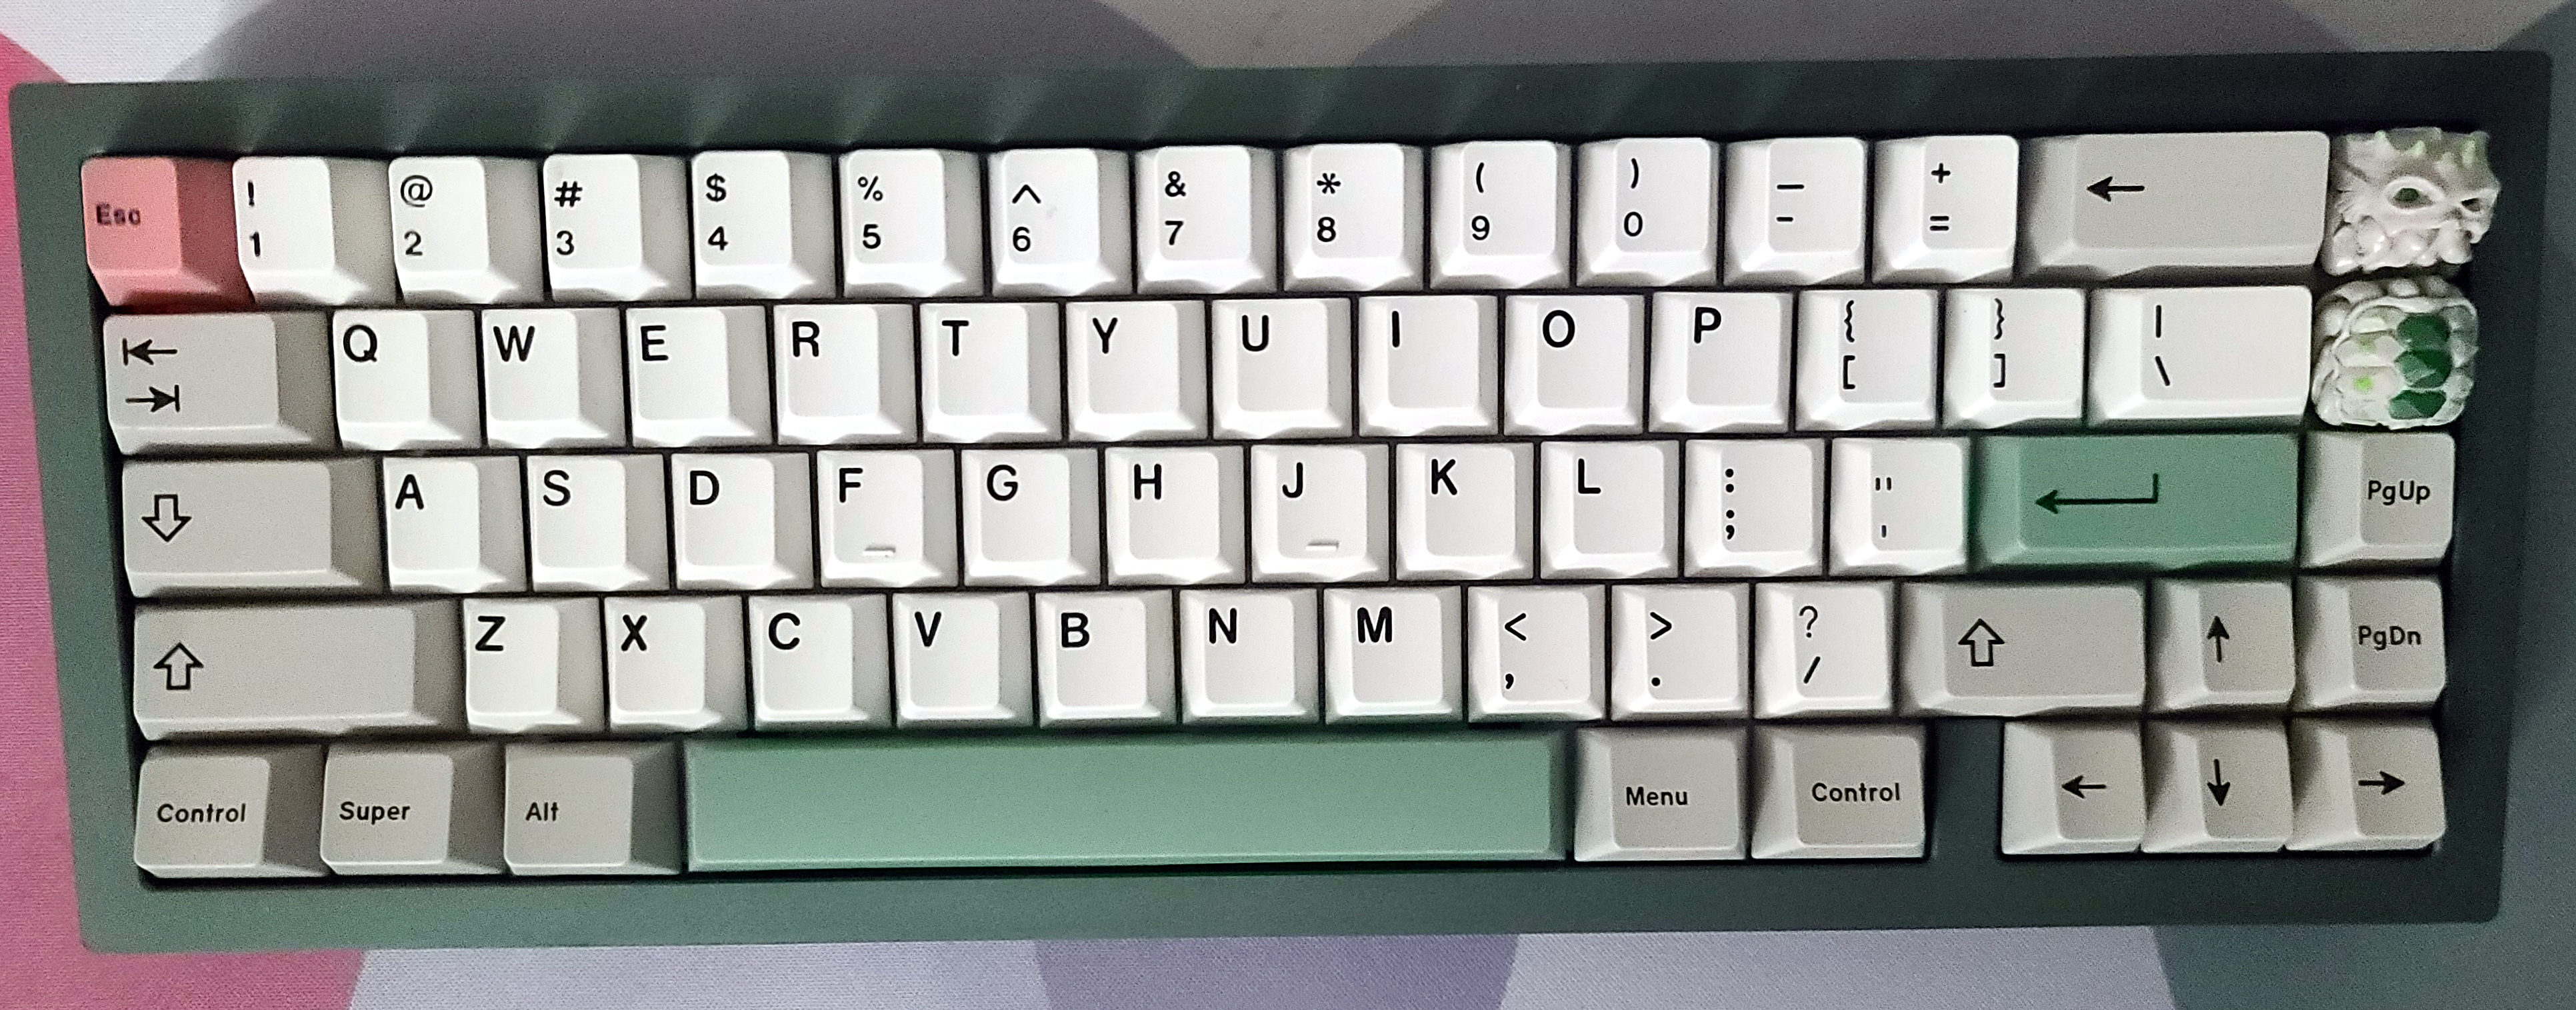 Savage65 Green Keyboard